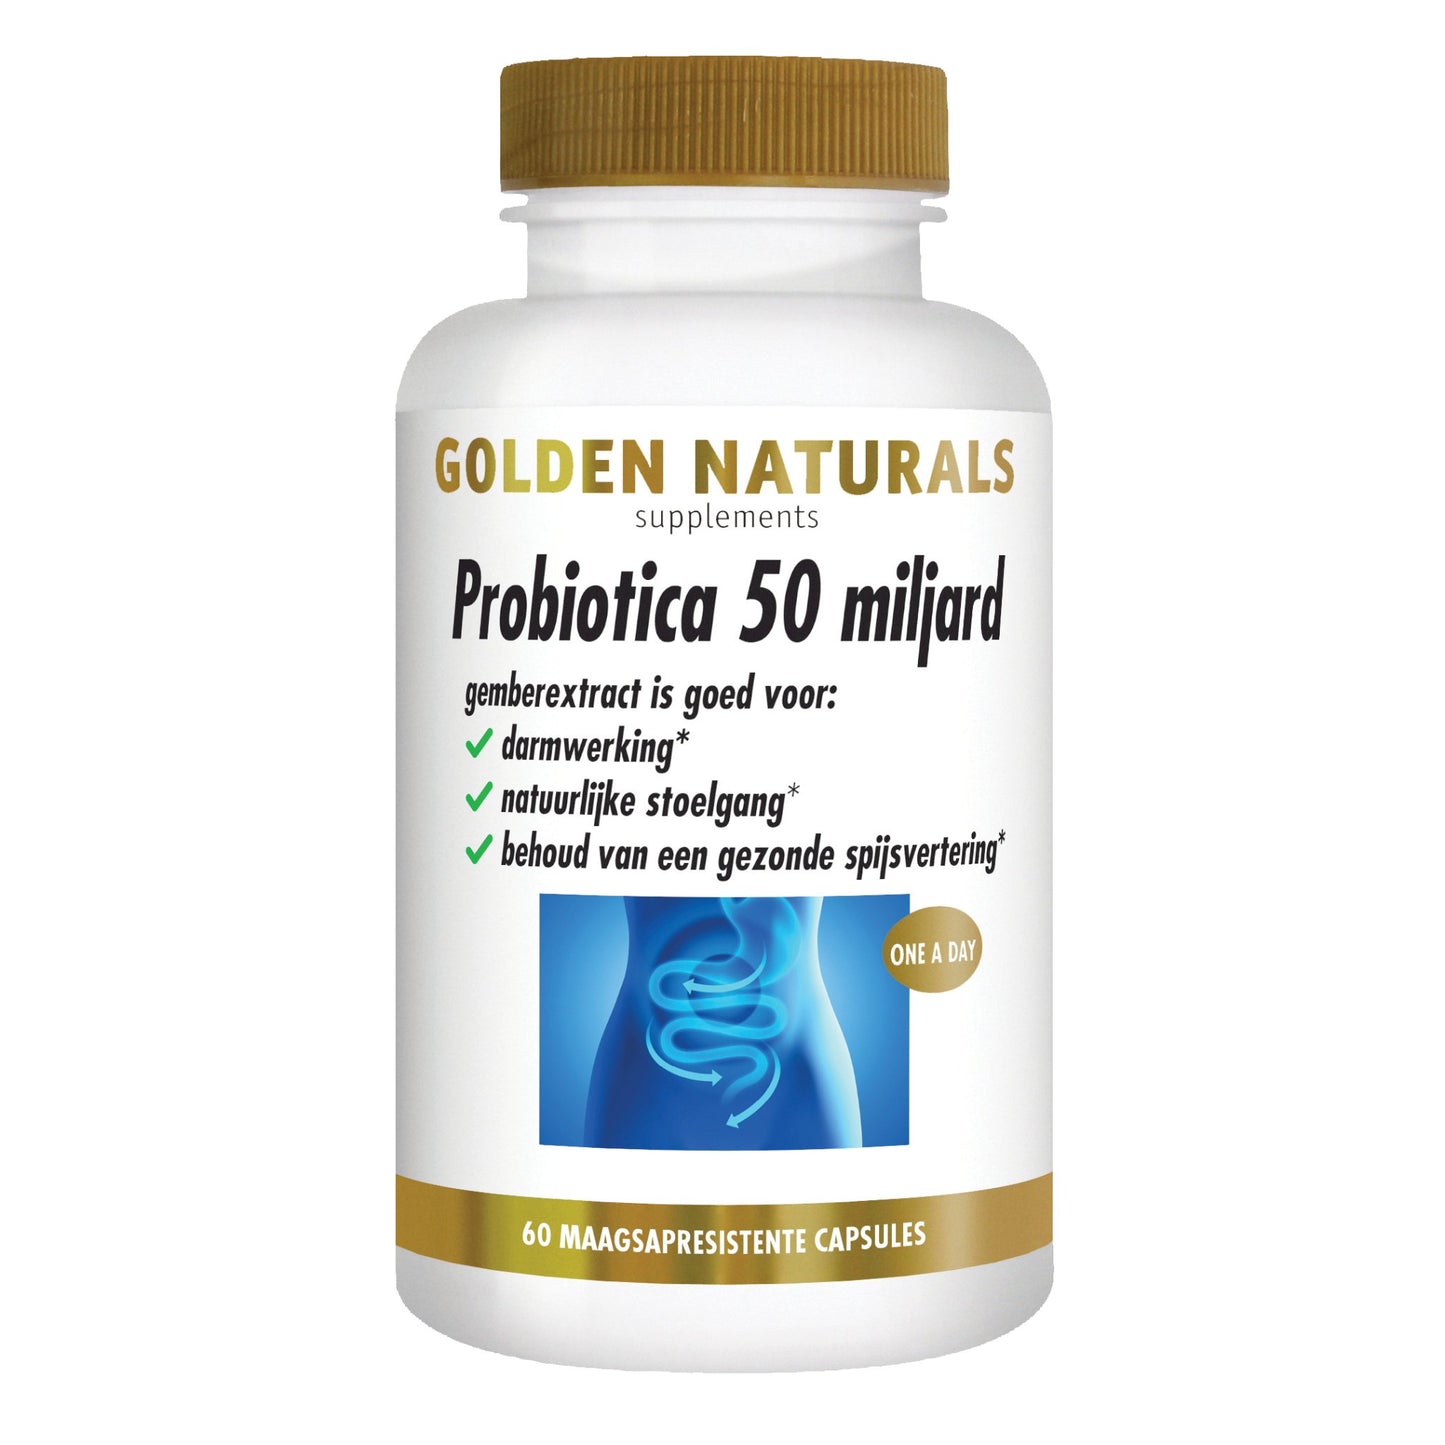 Probiotica 50 miljard - 60 - veganistische maagsapresistente capsules Supplement Golden Naturals   